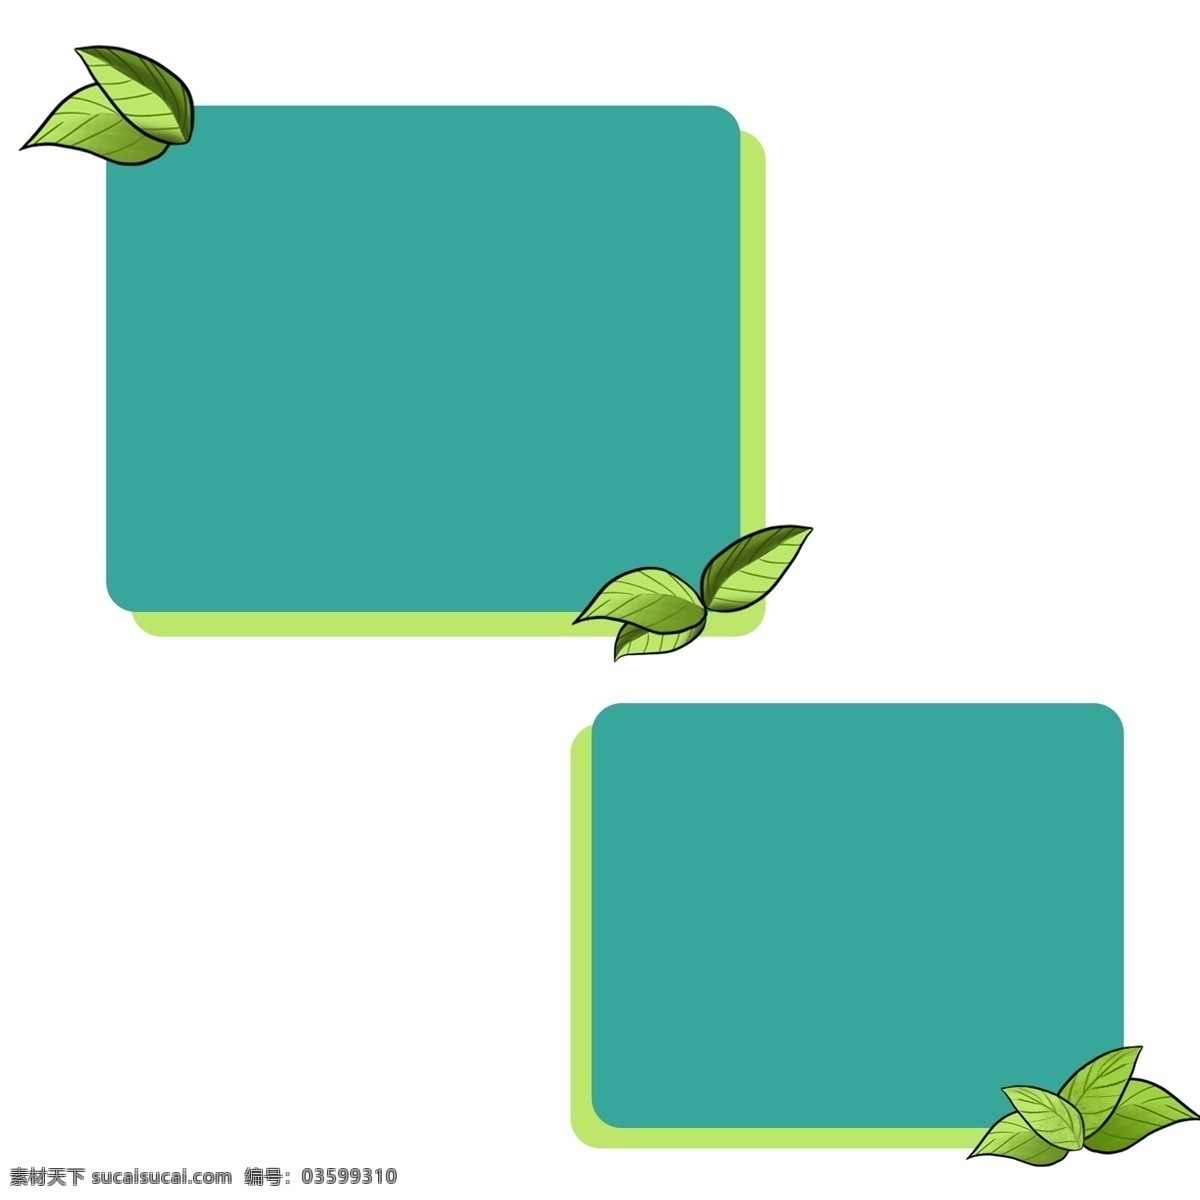 绿叶 装饰 蓝色 相框 绿叶装饰相框 蓝色相框 绿色叶子相框 蓝色相框插图 植物相框插画 框